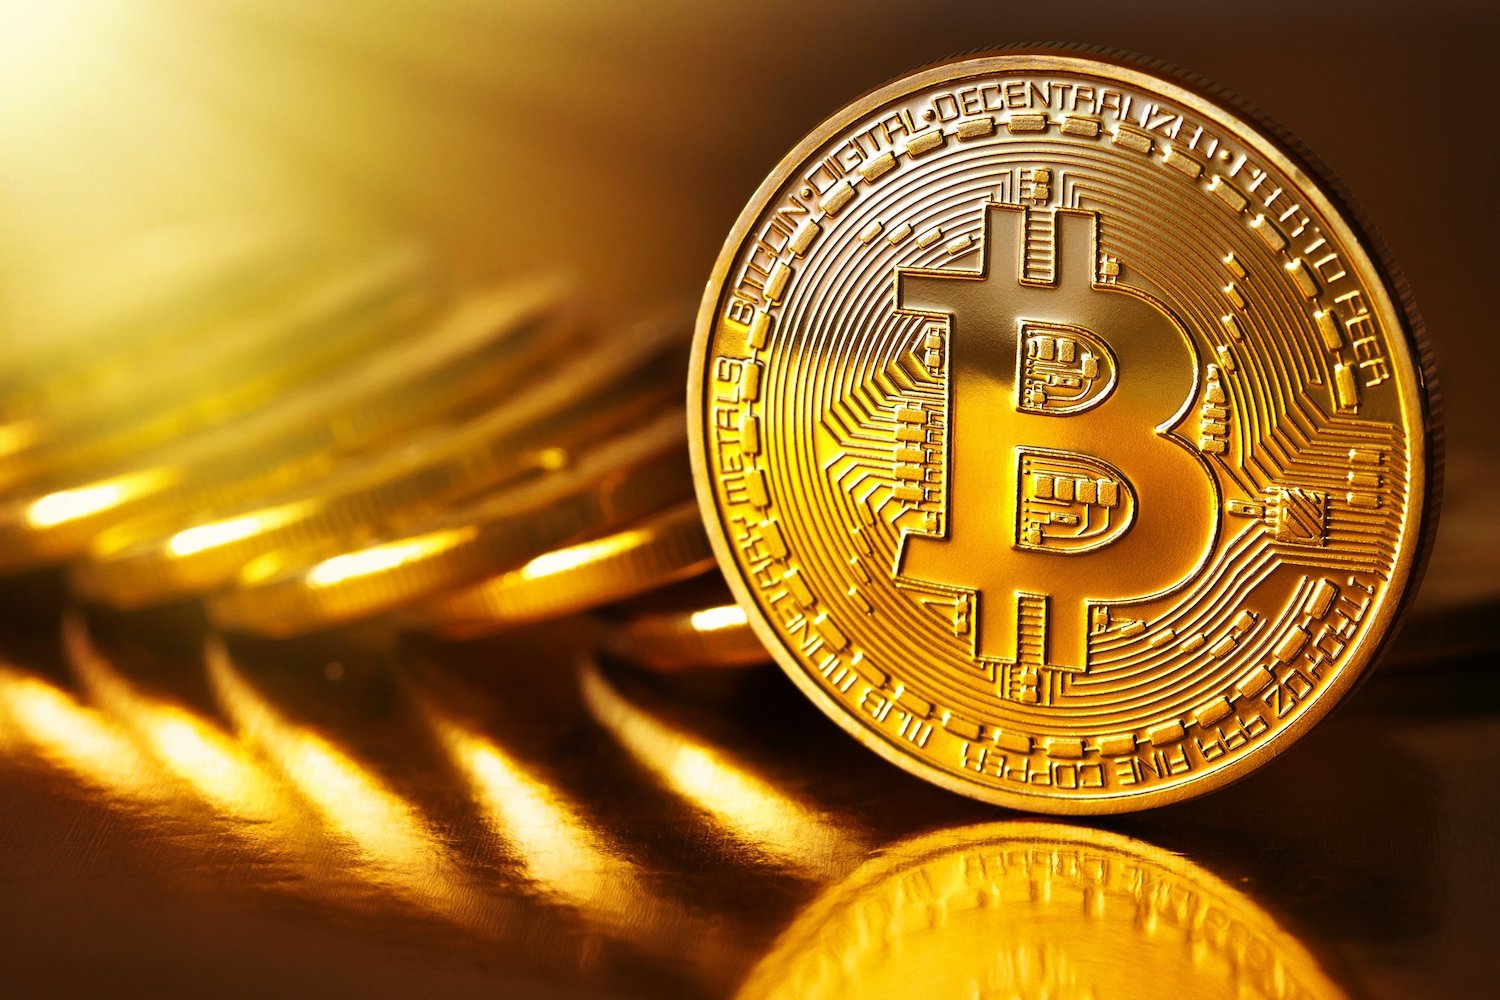 bcg bitcoin gold